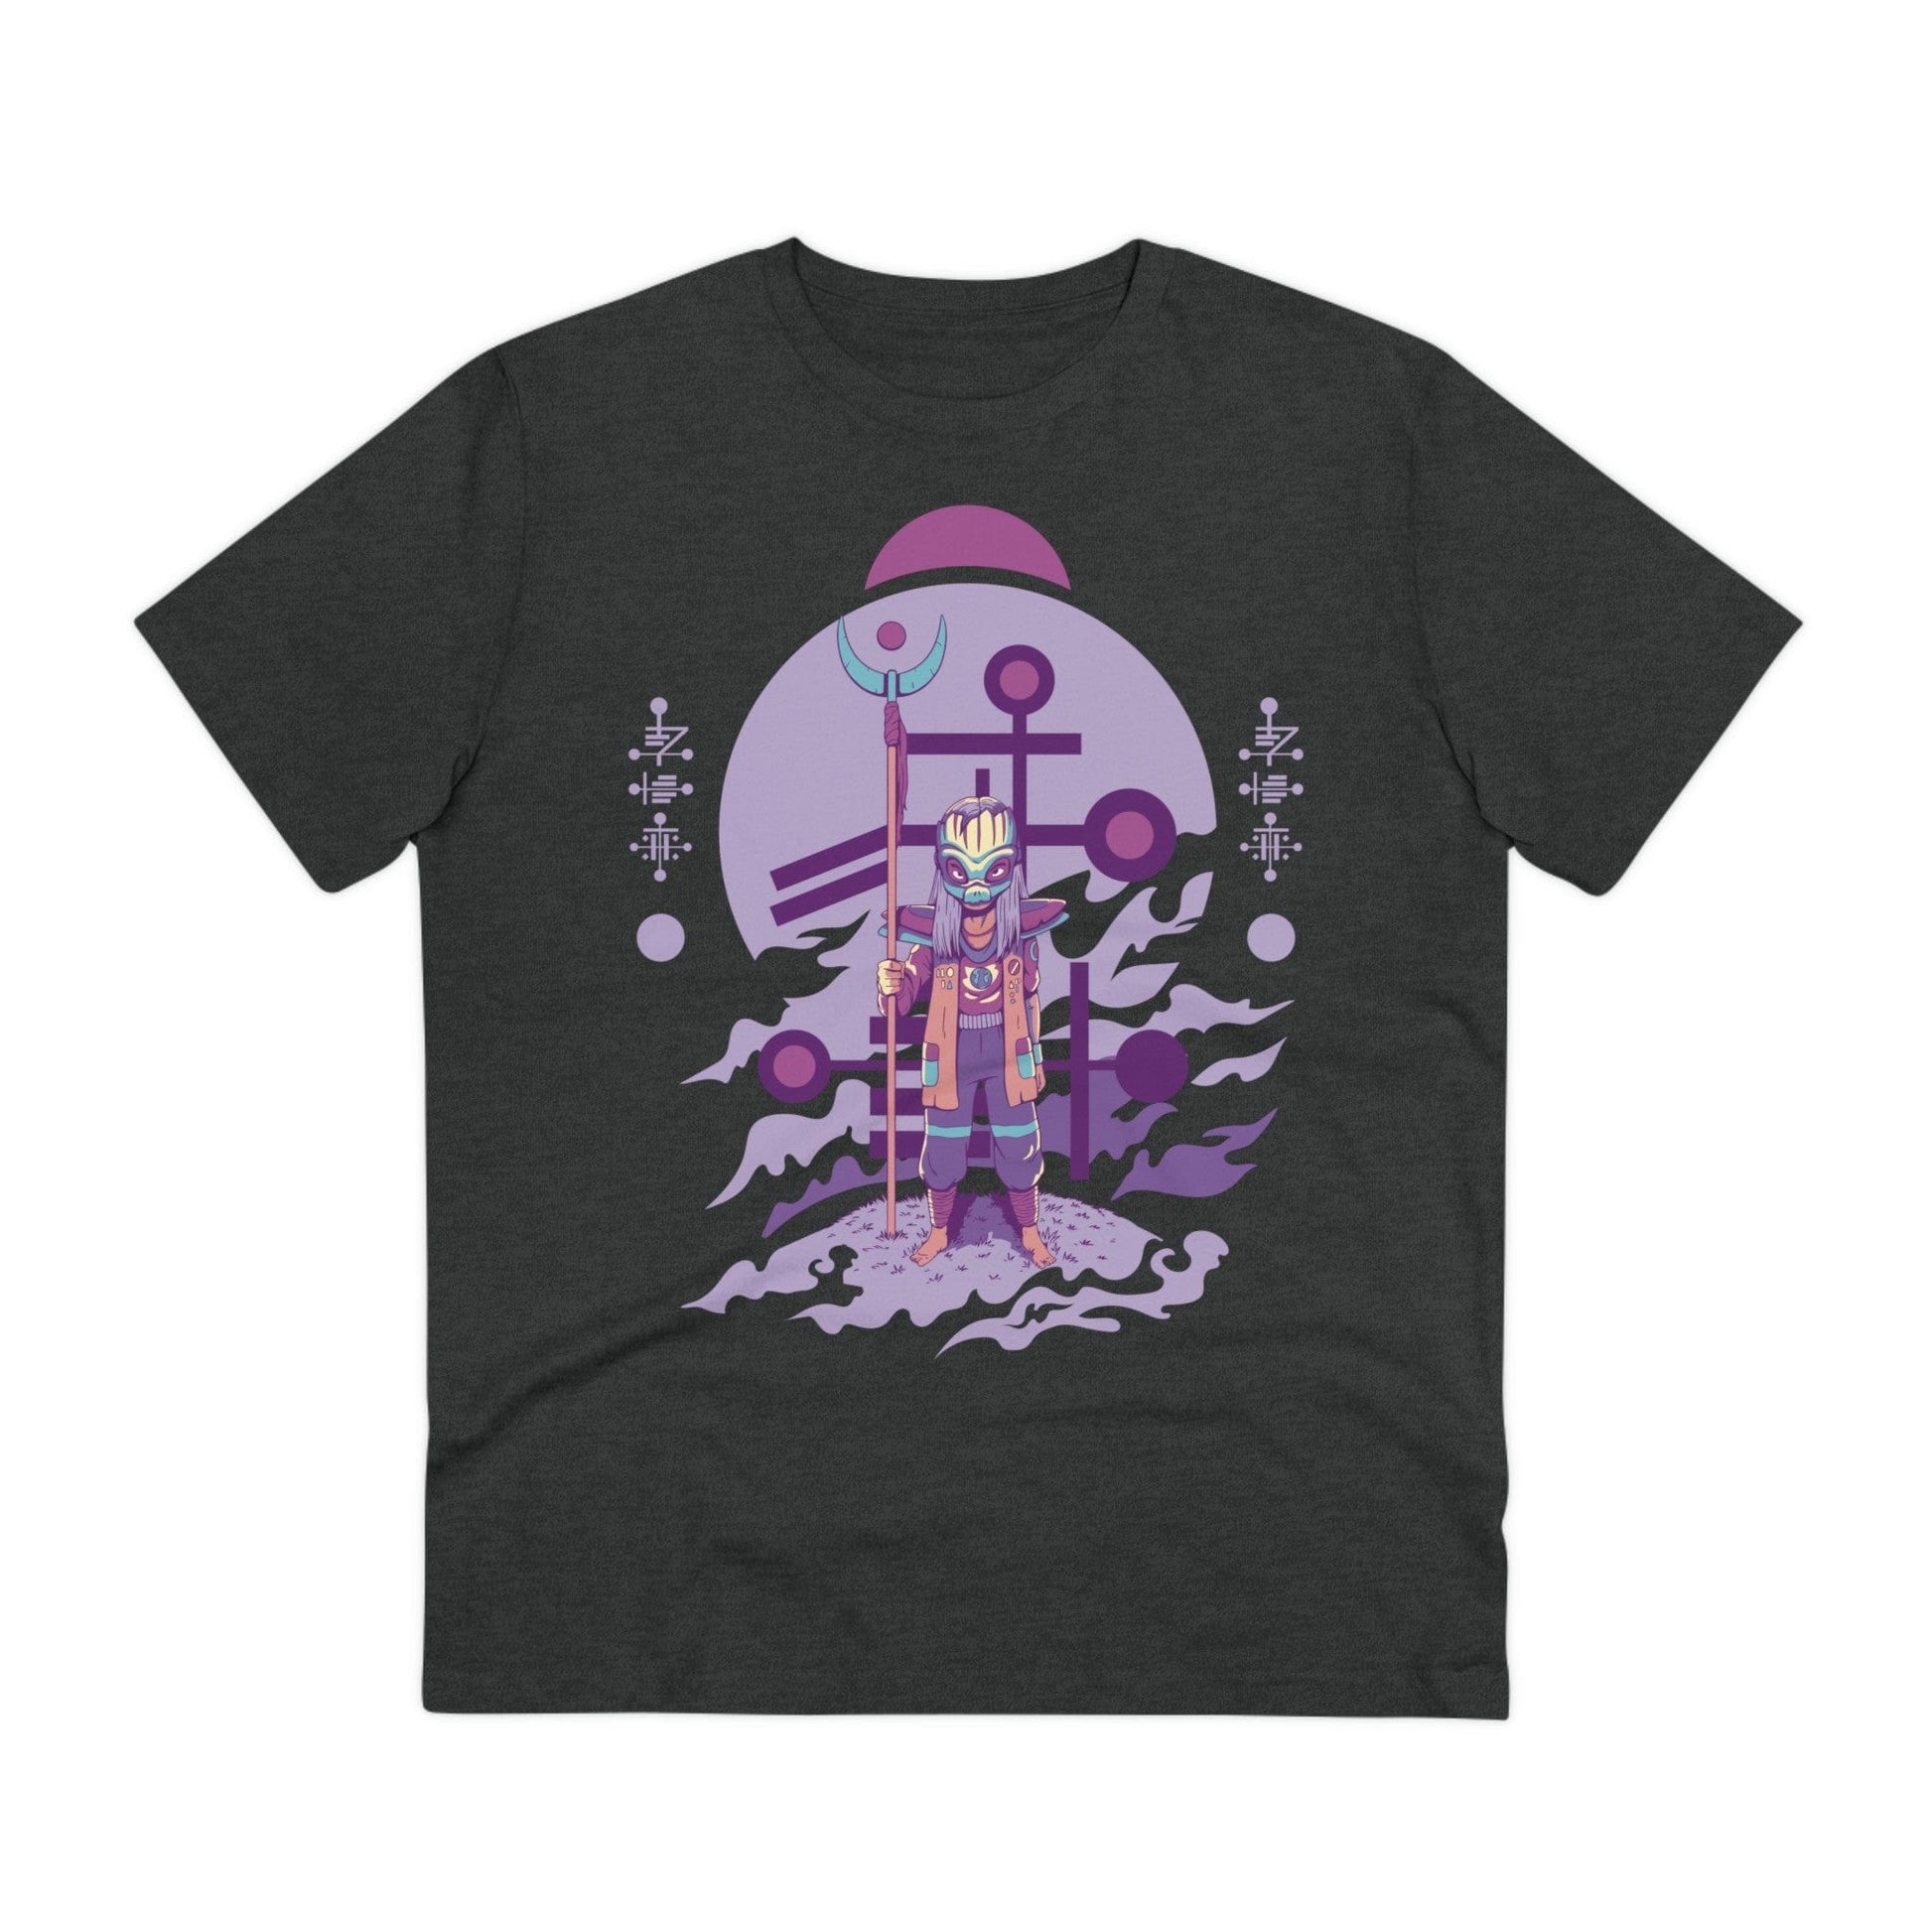 Printify T-Shirt Dark Heather Grey / 2XS Standing Alien with high staff - Alien Warrior - Front Design